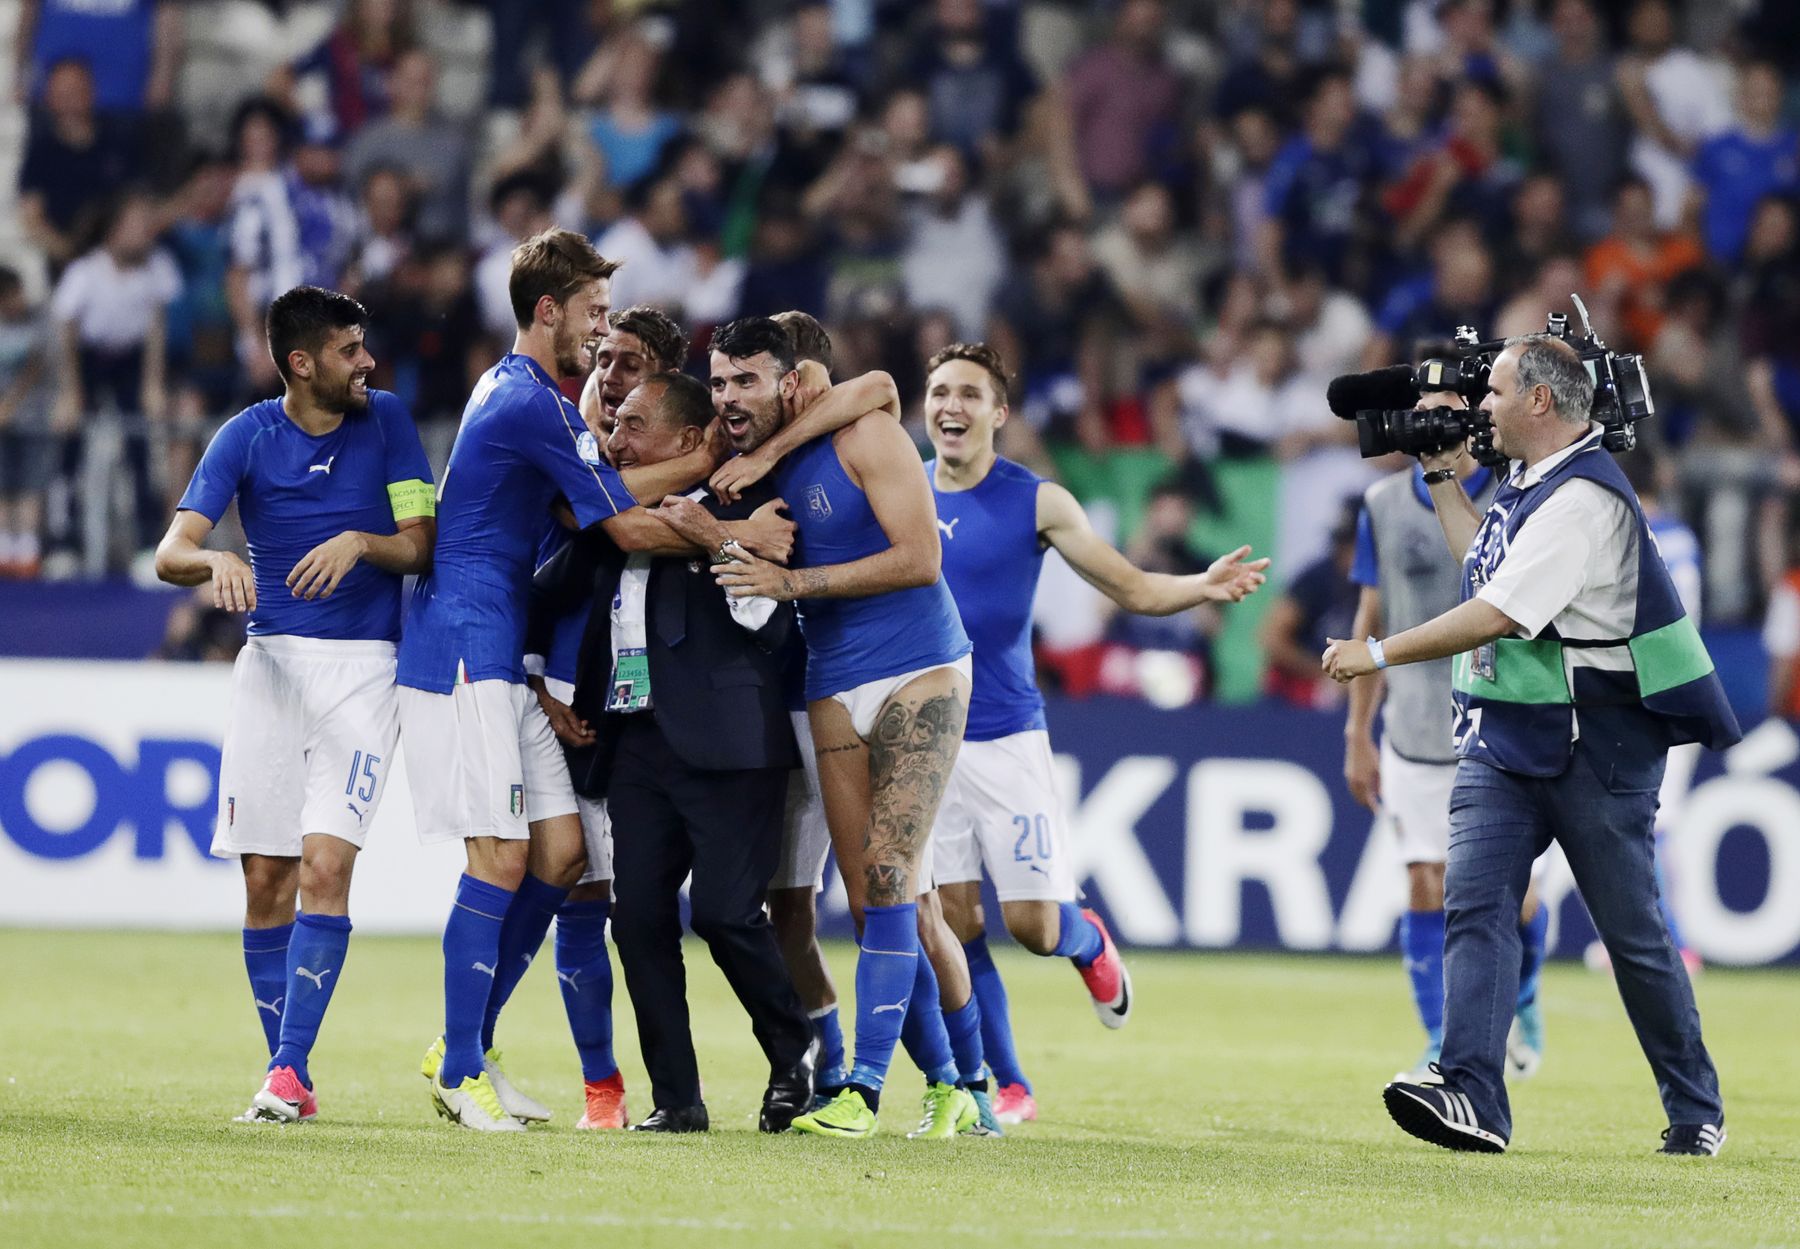 Así celebra este jugador italiano la victoria de su equipo de fútbol